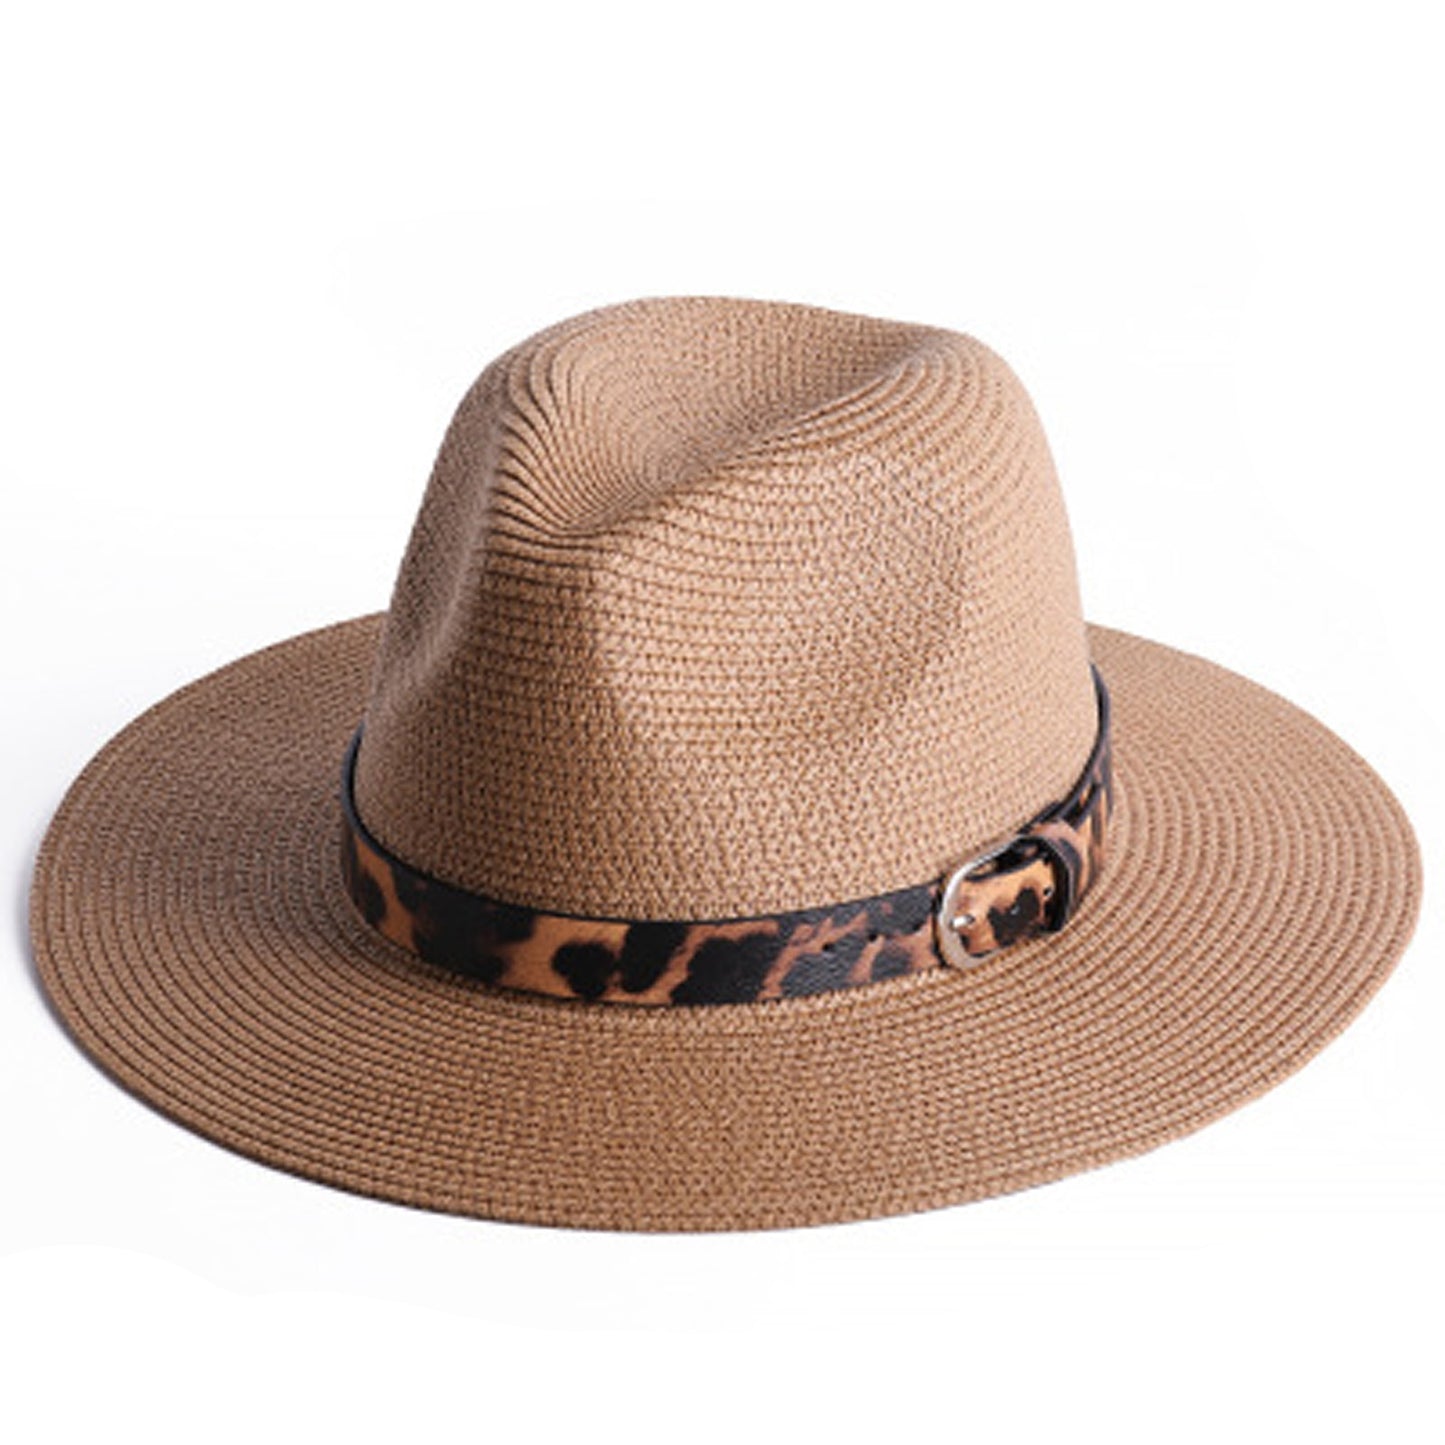 Jazzy Leopard Print Fedora Straw Hat for Women